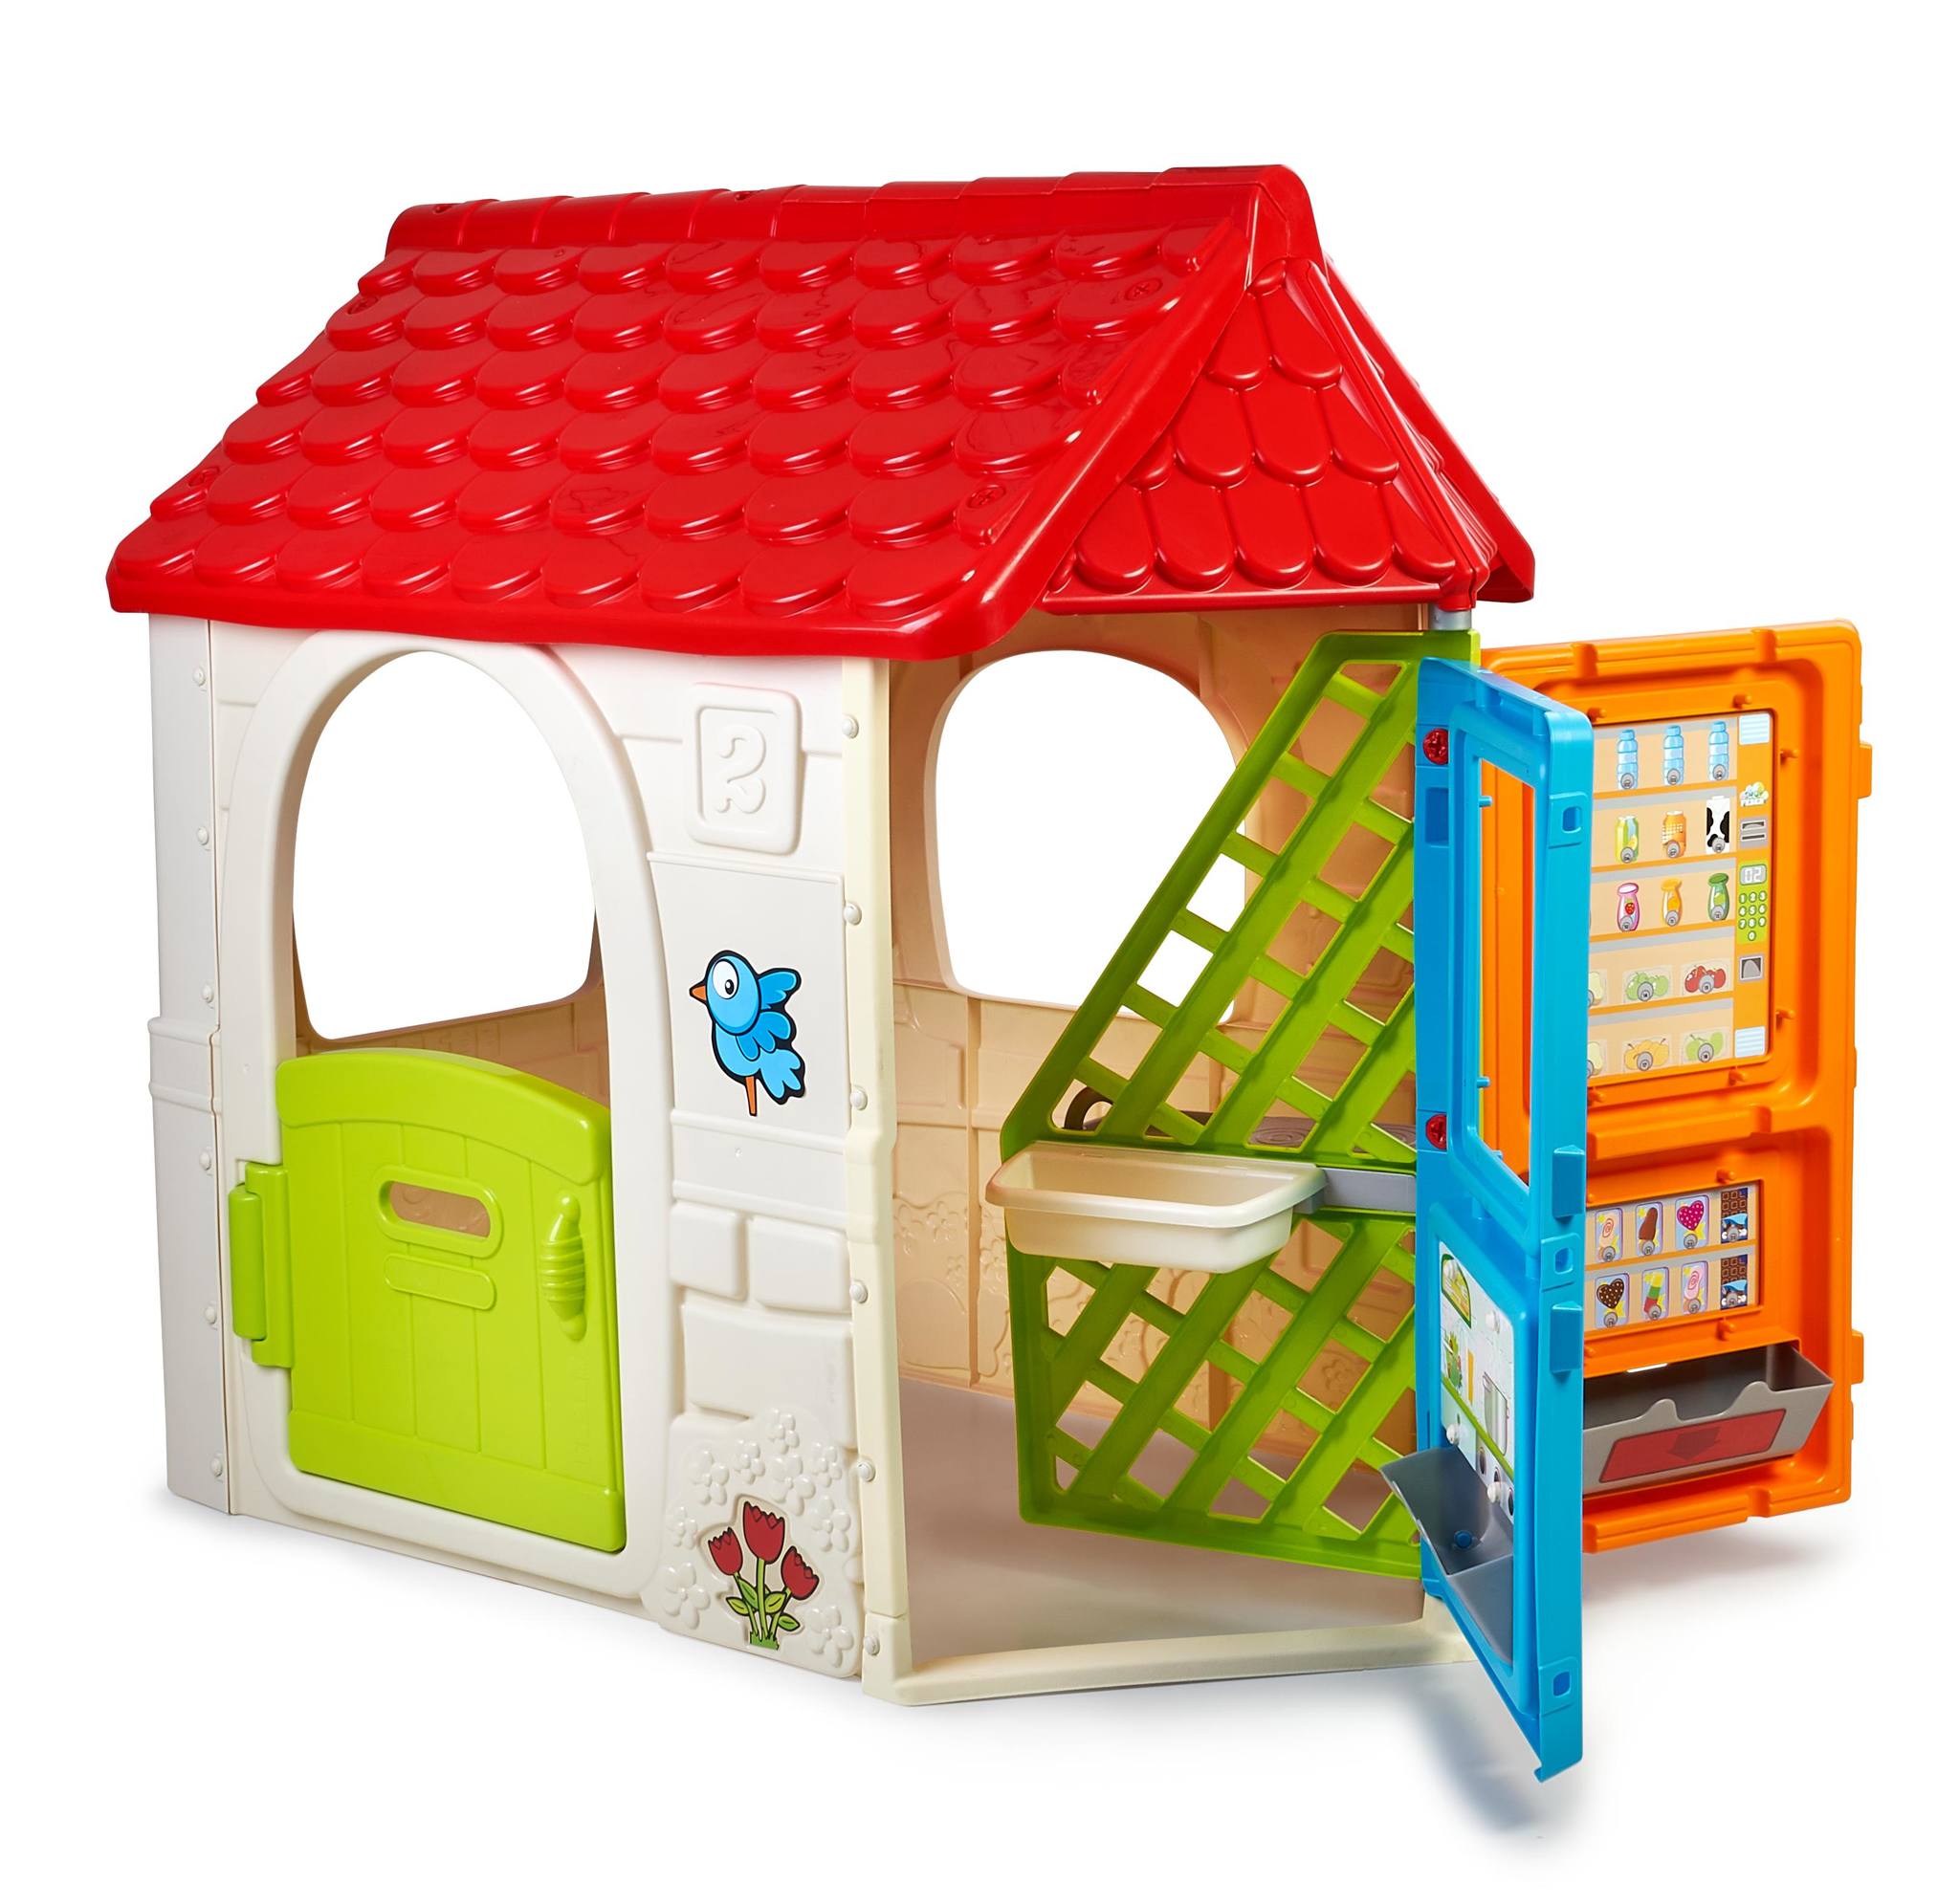 FEBER Casetta in plastica Girohouse - mis. 108x70xh124 cm - casa per  bambini che include una porta girevole con 6 aree gioco: cucina, barbecue